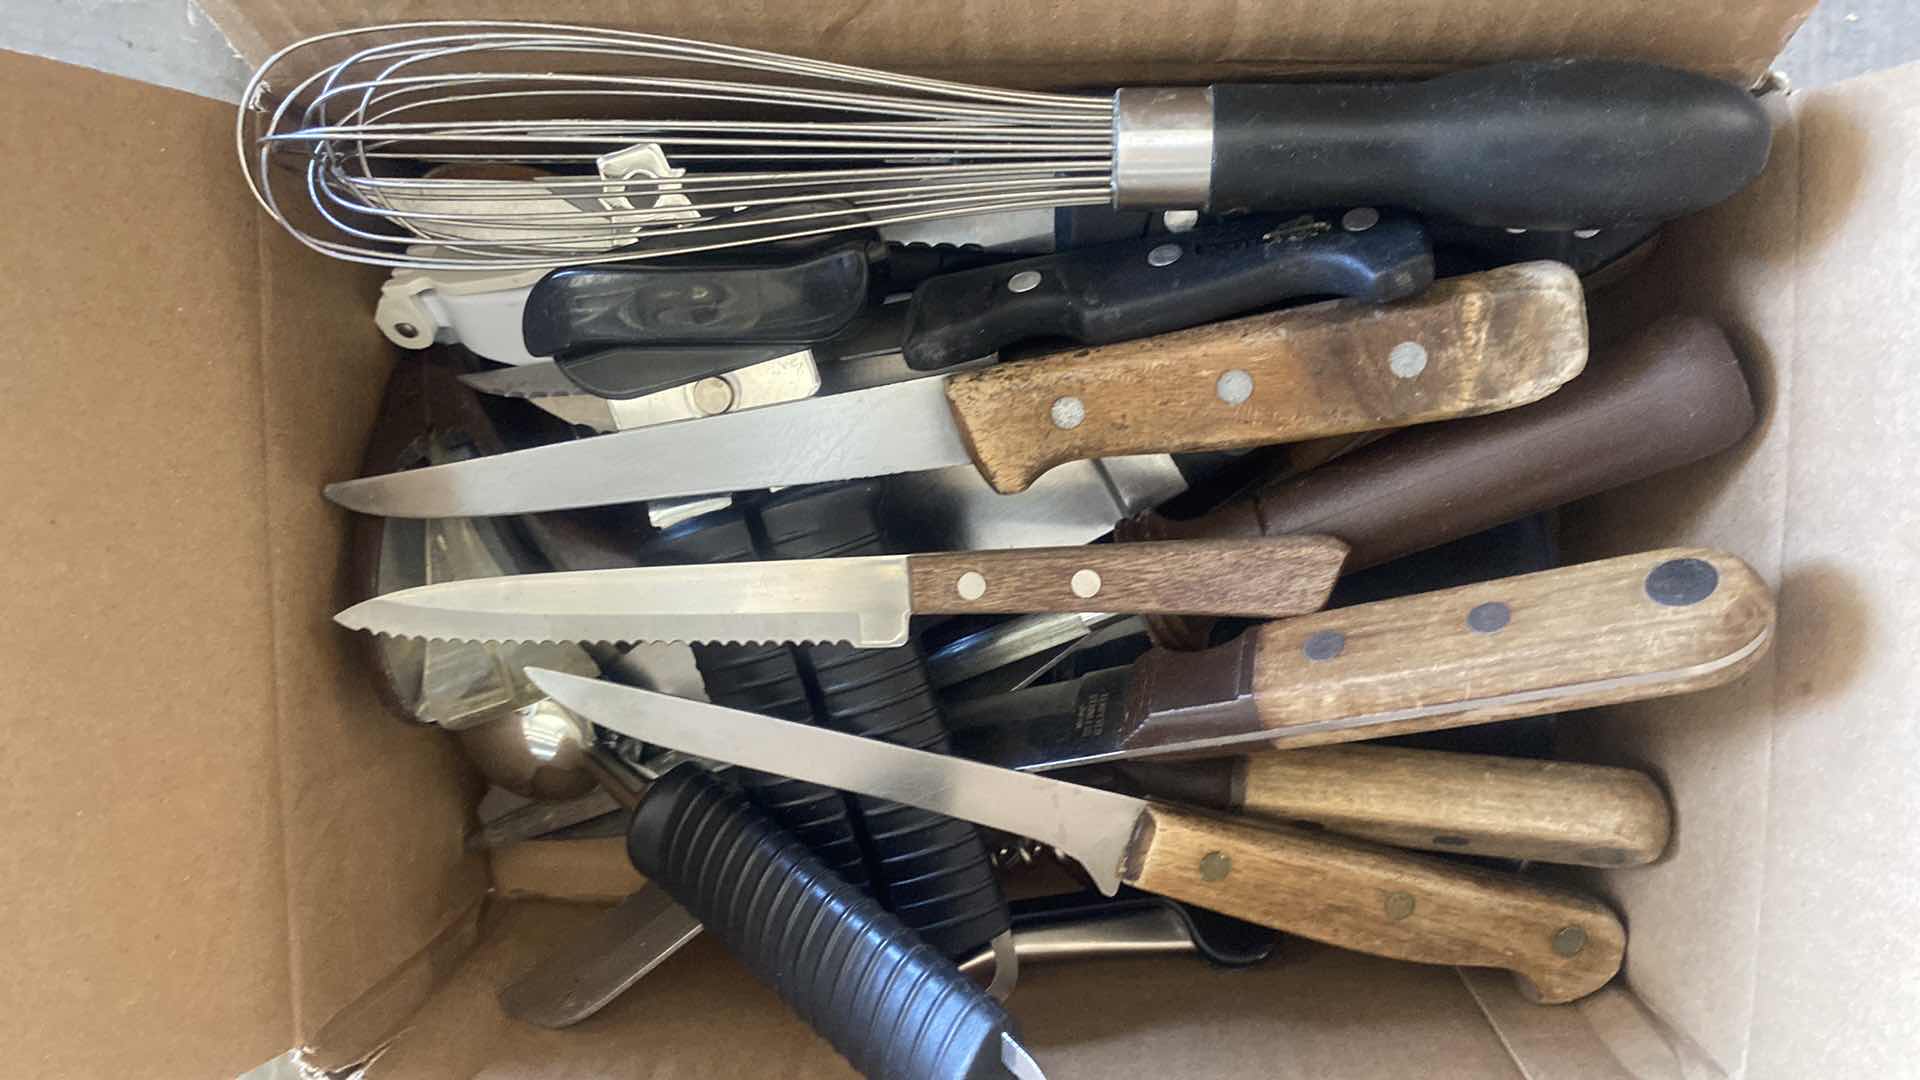 Photo 1 of GARAGE SHELF - BOX OF KNIFES